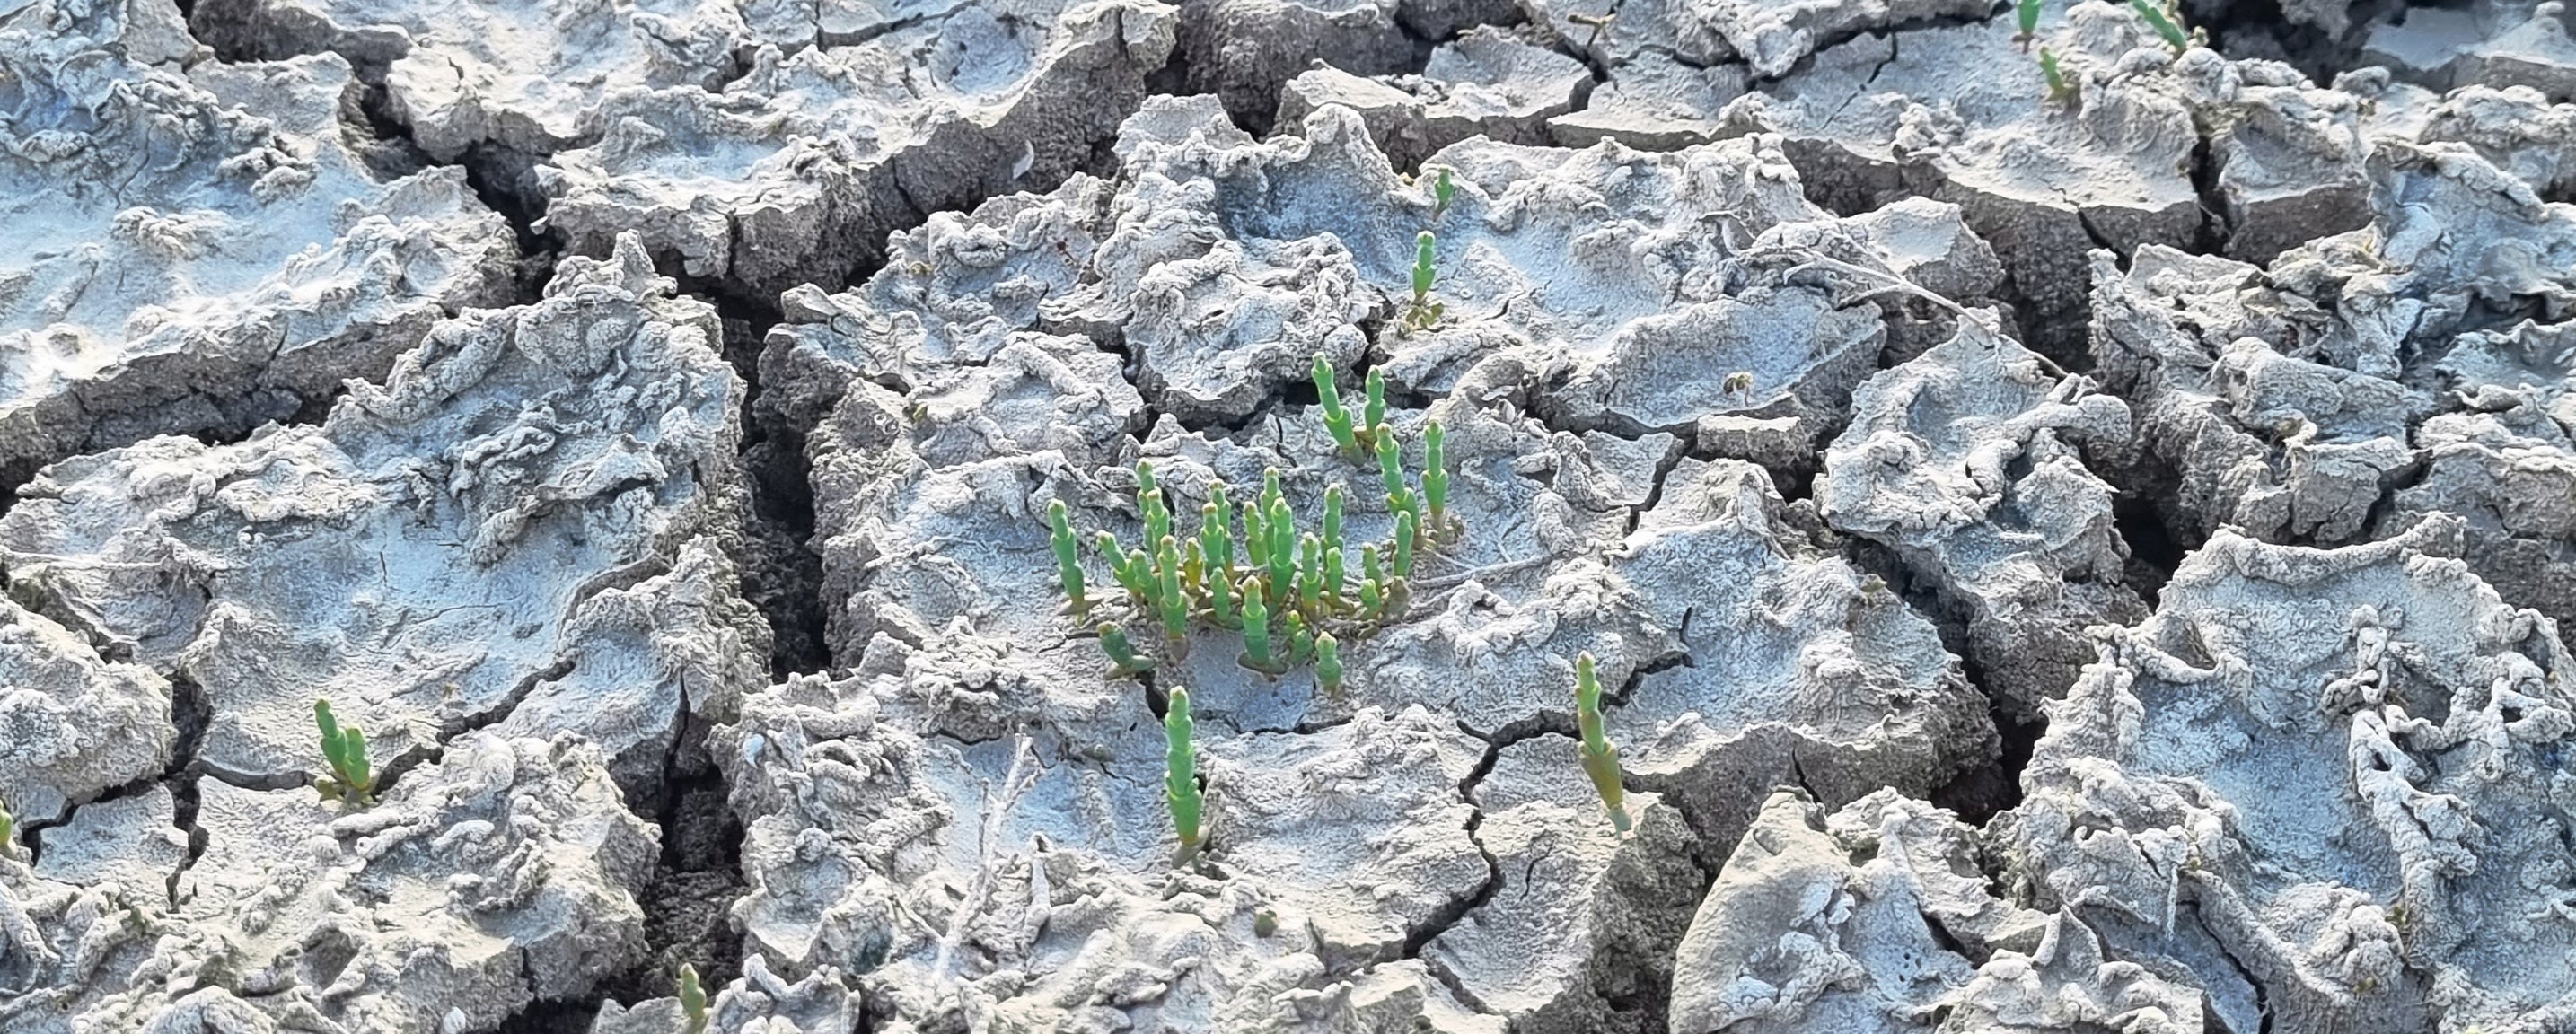 Salicornia brotando de un suelo seco y quebrado por el calor, pero llena de vida pese a las duras condiciones.